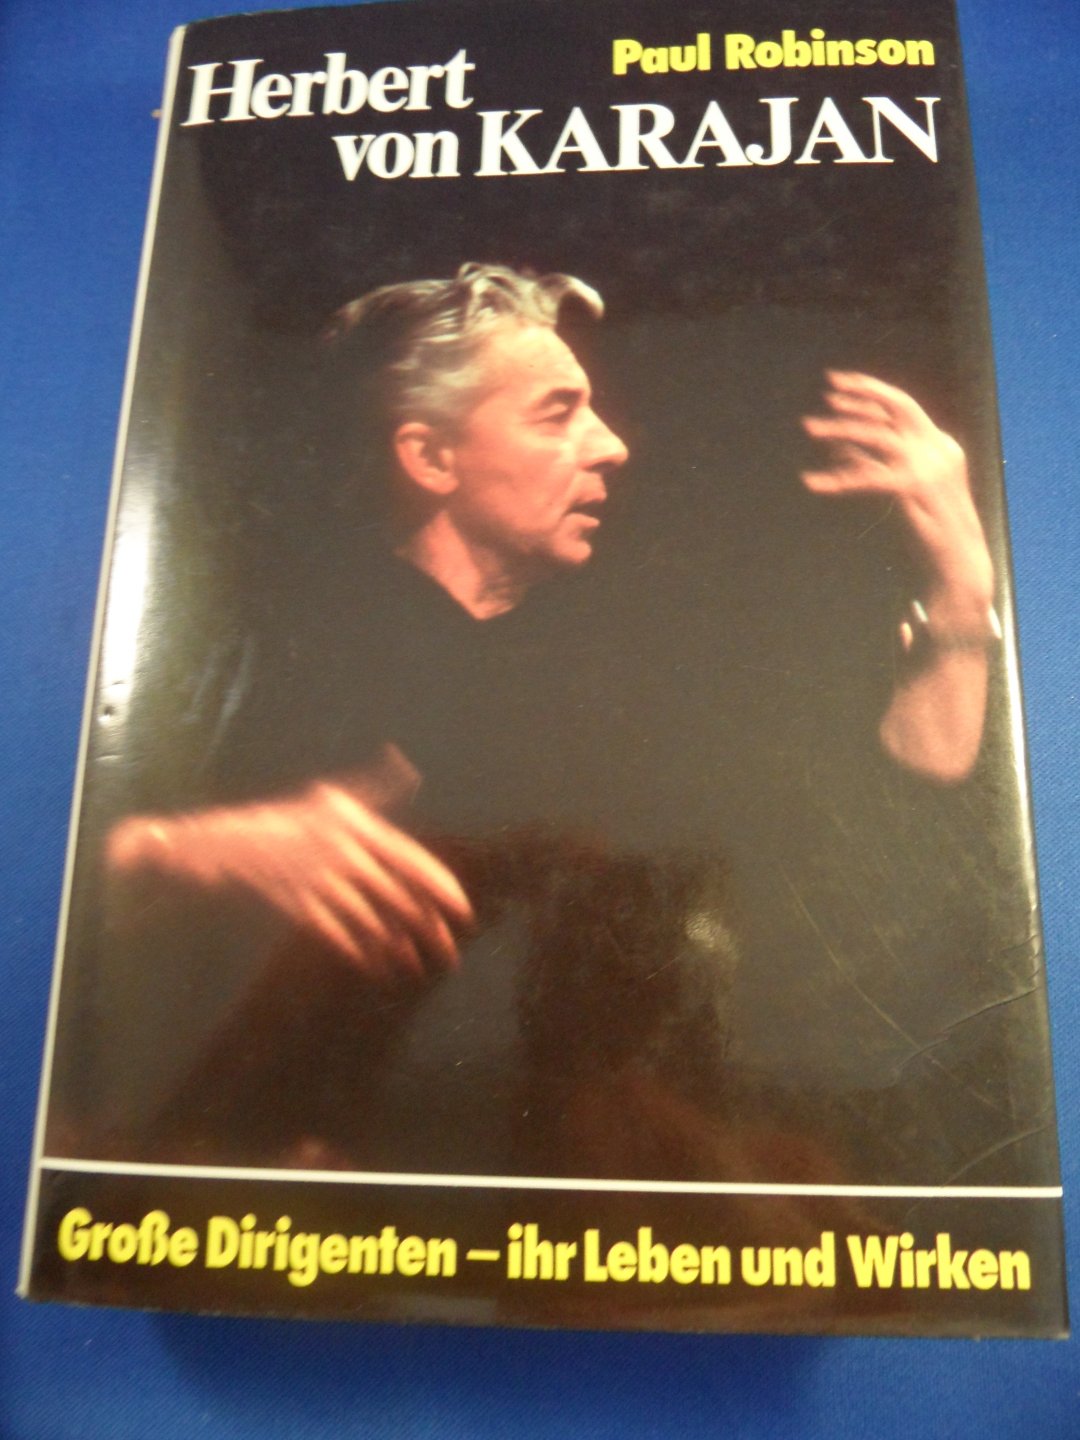 Robinson, Paul - Herbert von Karajan Grosse Dirigenten, ihr Leben und Wirken